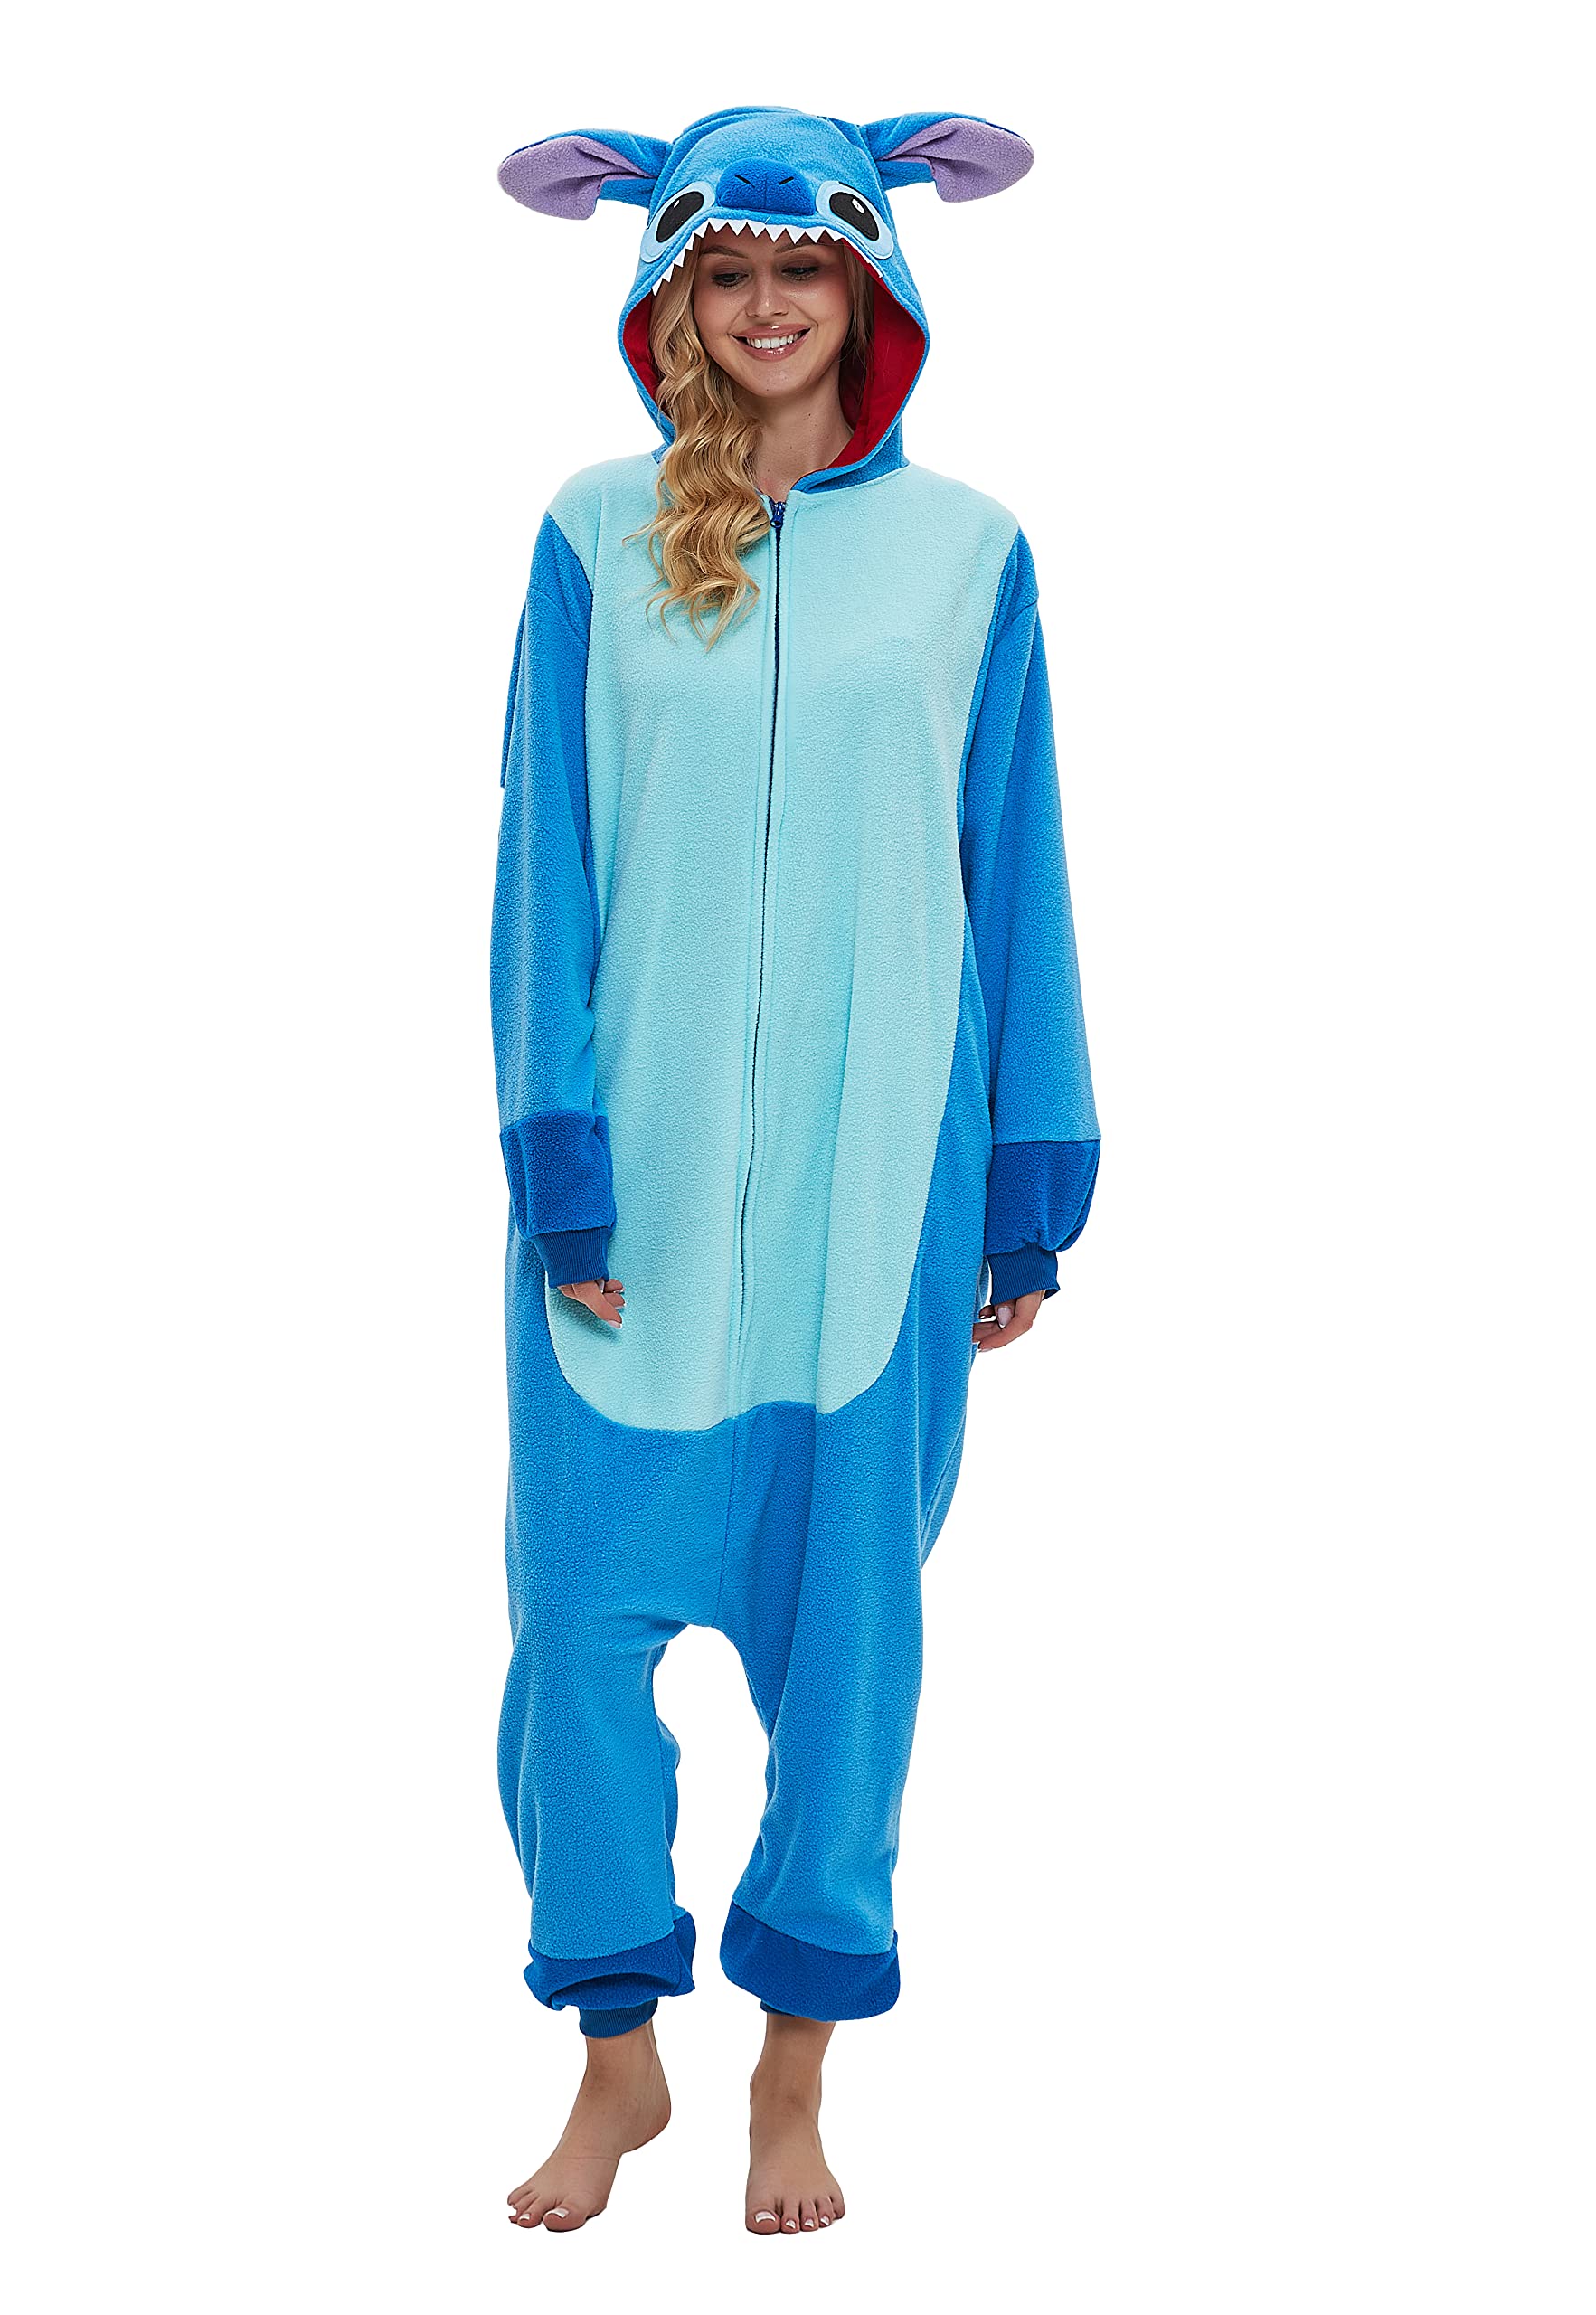 SMITHROAD Jumpsuit Tier Karton Fasching Halloween Kostüm Sleepsuit Cosplay Fleece-Overall Pyjama Schlafanzug Erwachsene Unisex Nachtwäsche Krümelmonster Onesie XL